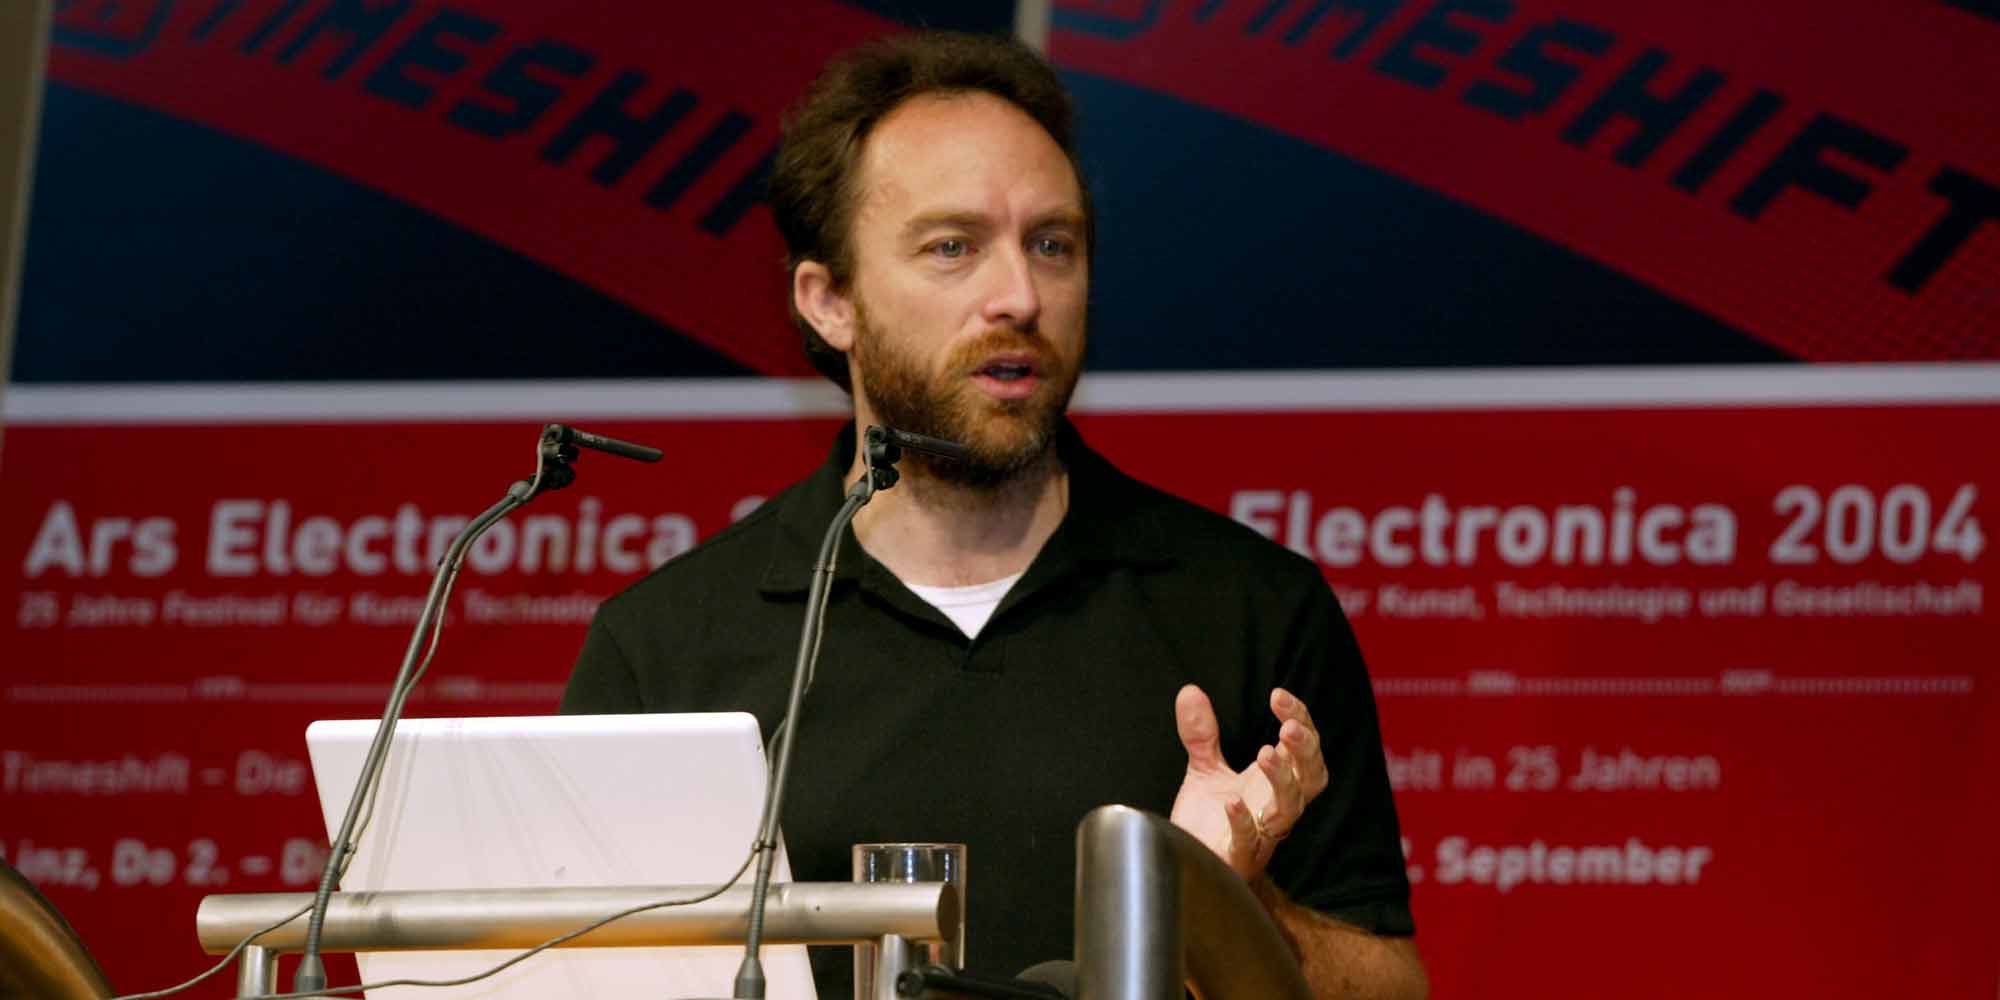 <strong>2004:</strong> Für die von ihm mitbegründete Online-Enzyklopädie Wikipedia erhält Jimmy Wales die Goldene Nica des Prix Ars Electronica.